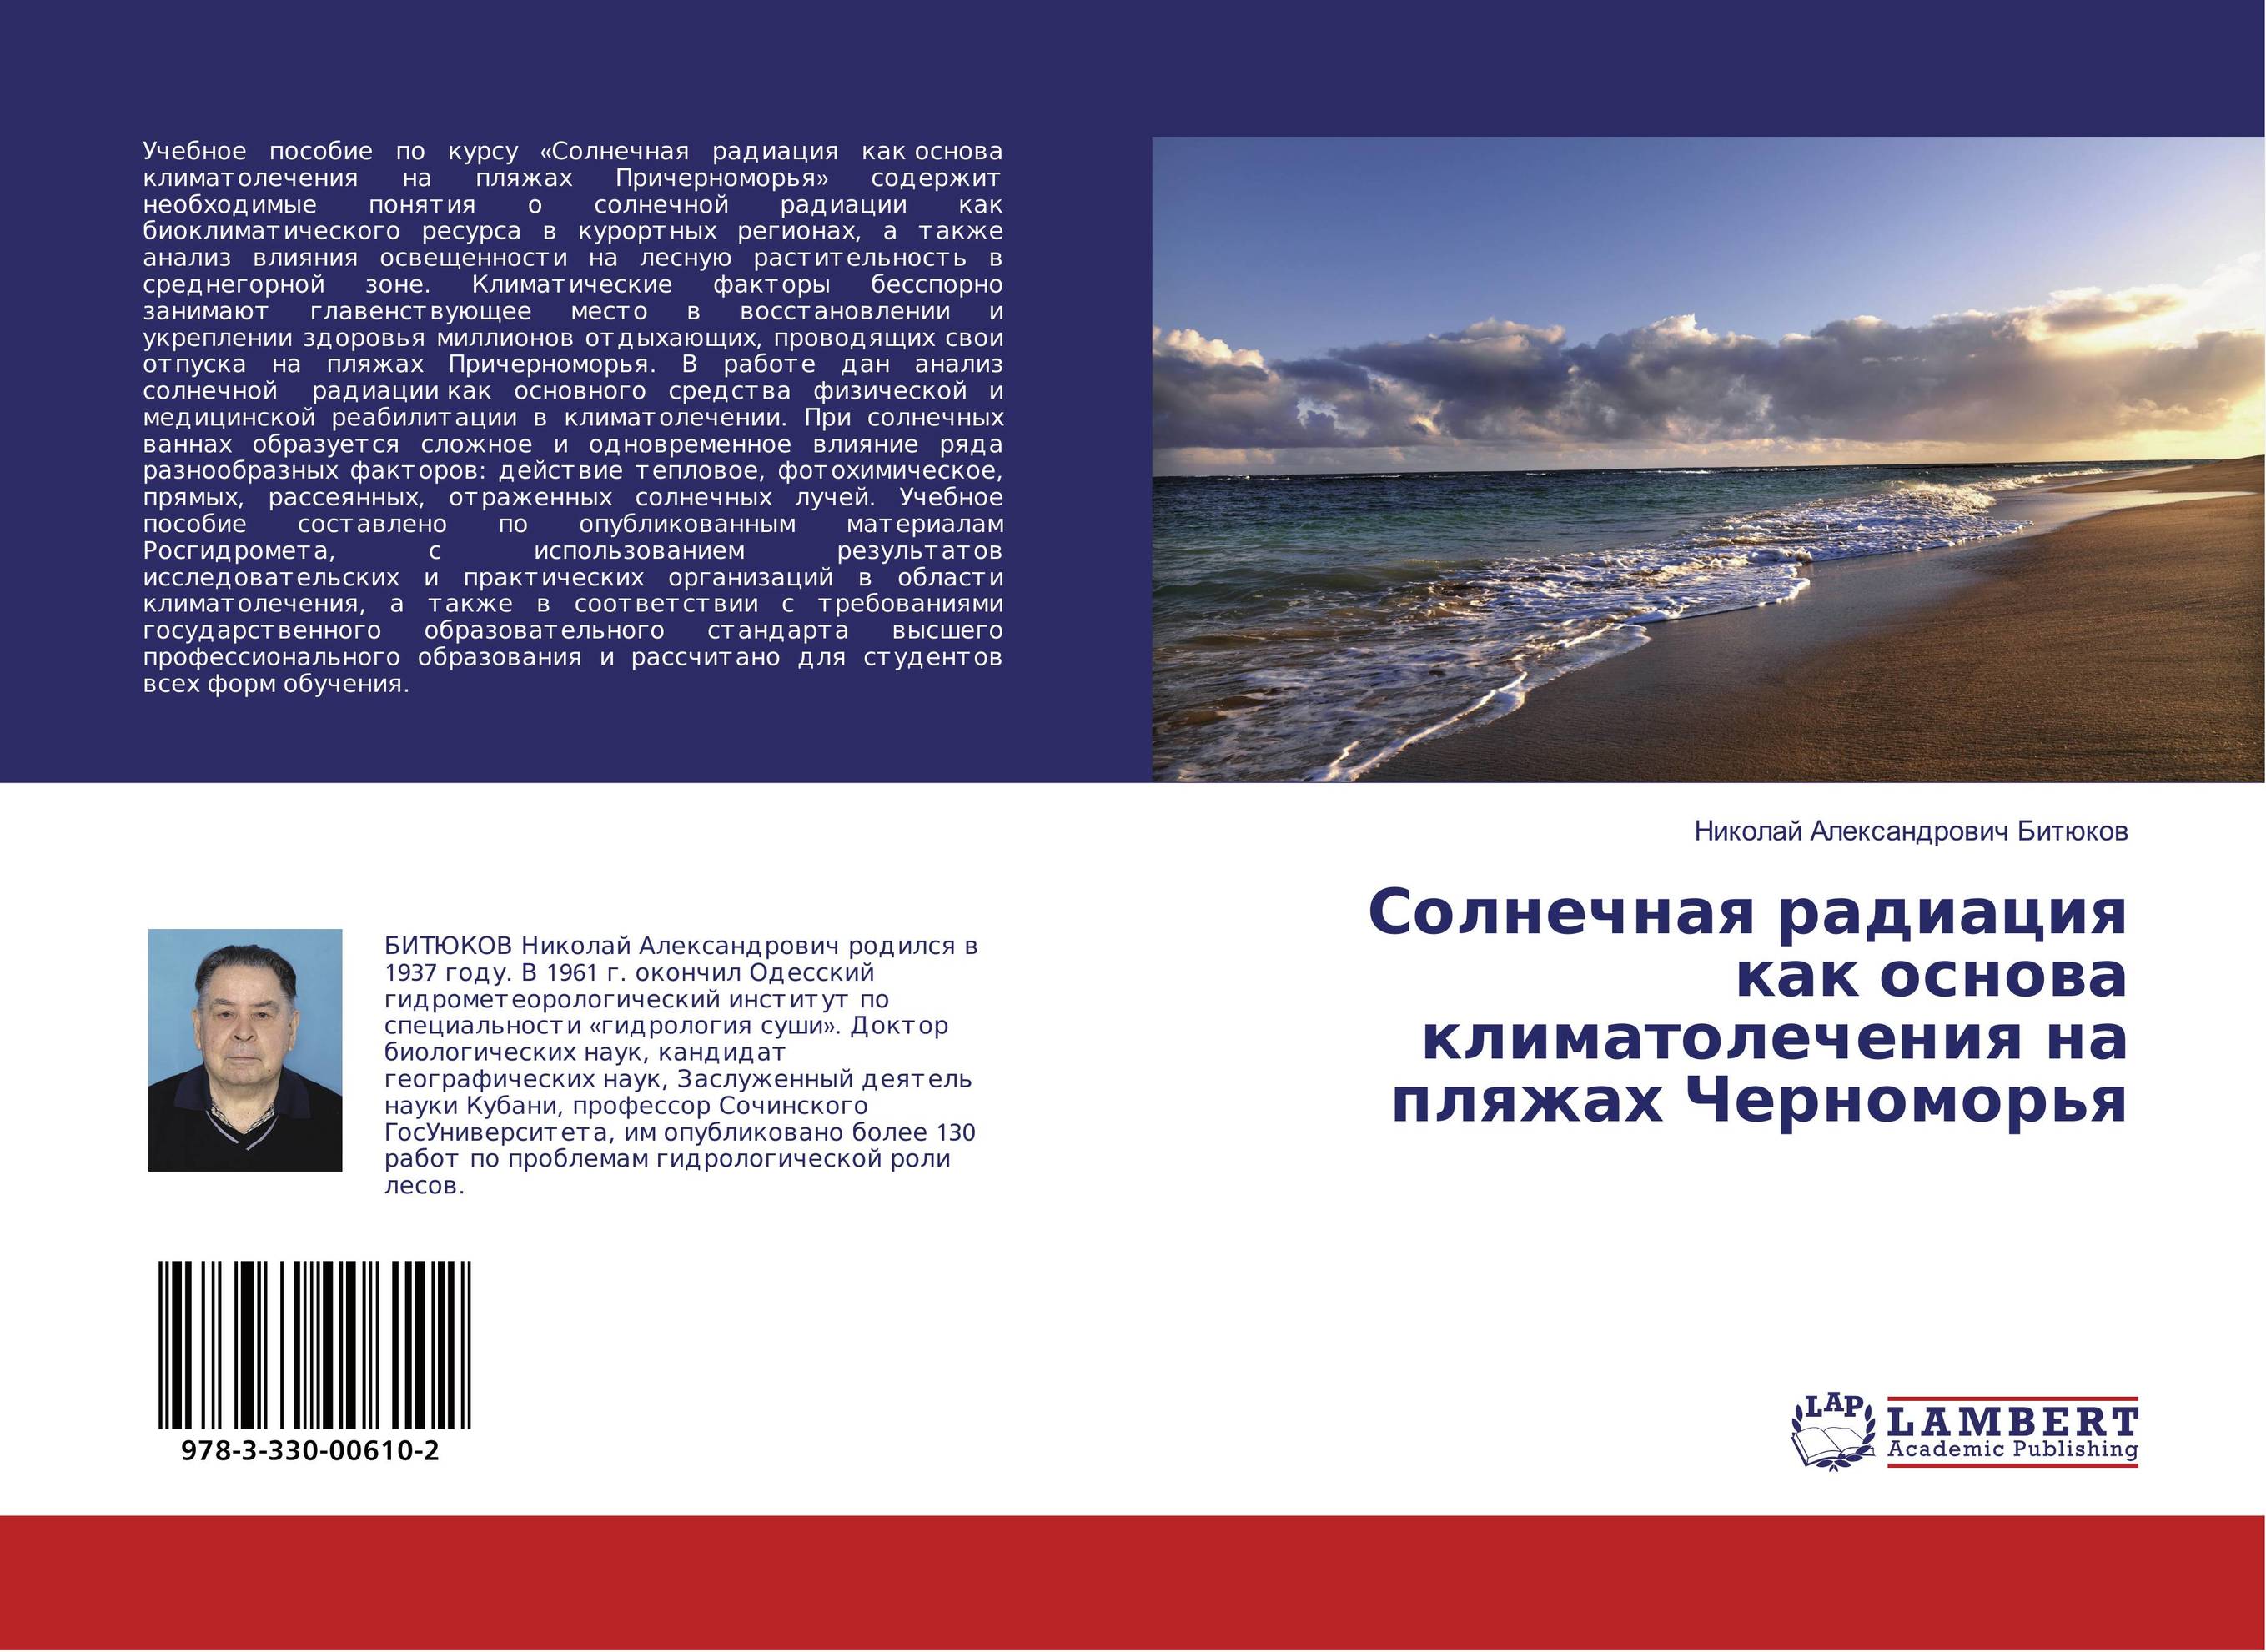 
        Солнечная радиация как основа климатолечения на пляжах Черноморья..
      